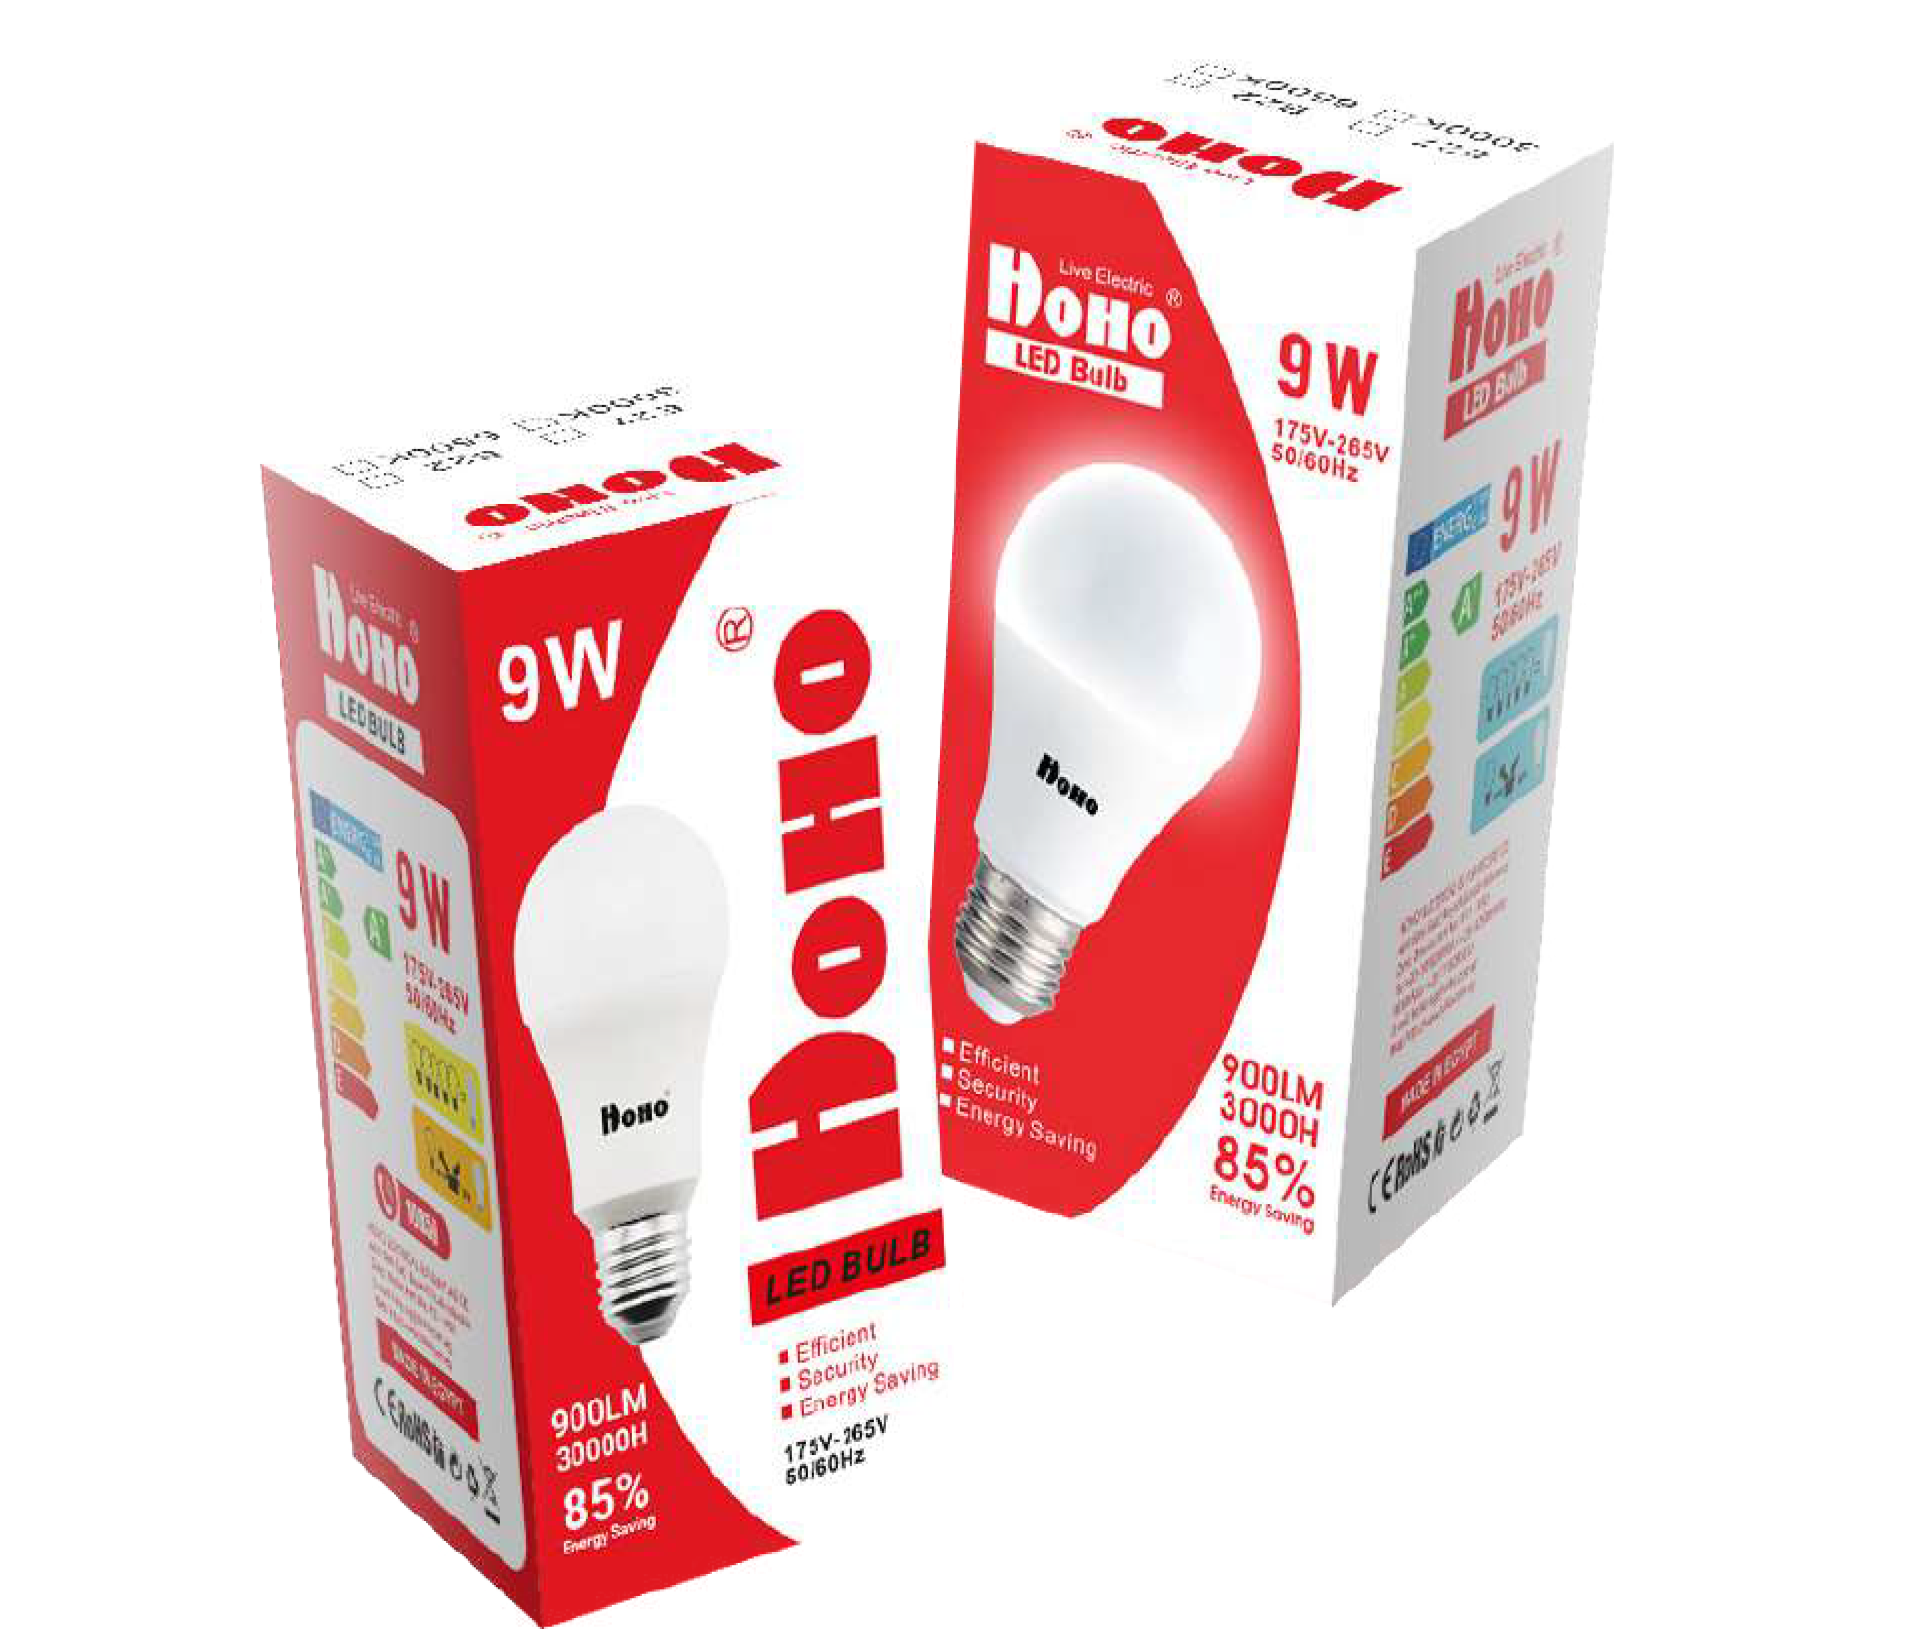 Packaging design for hoho LED bulb